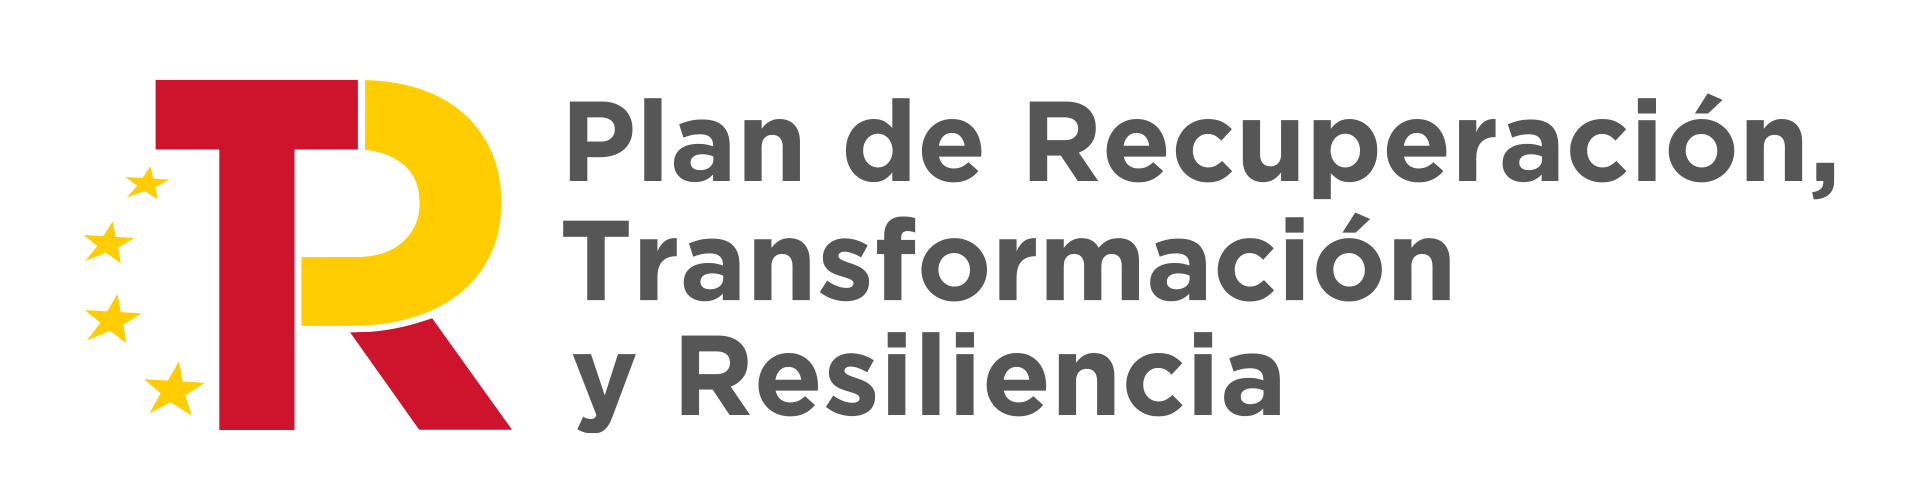 logo plan de recuperacion y resiliencia